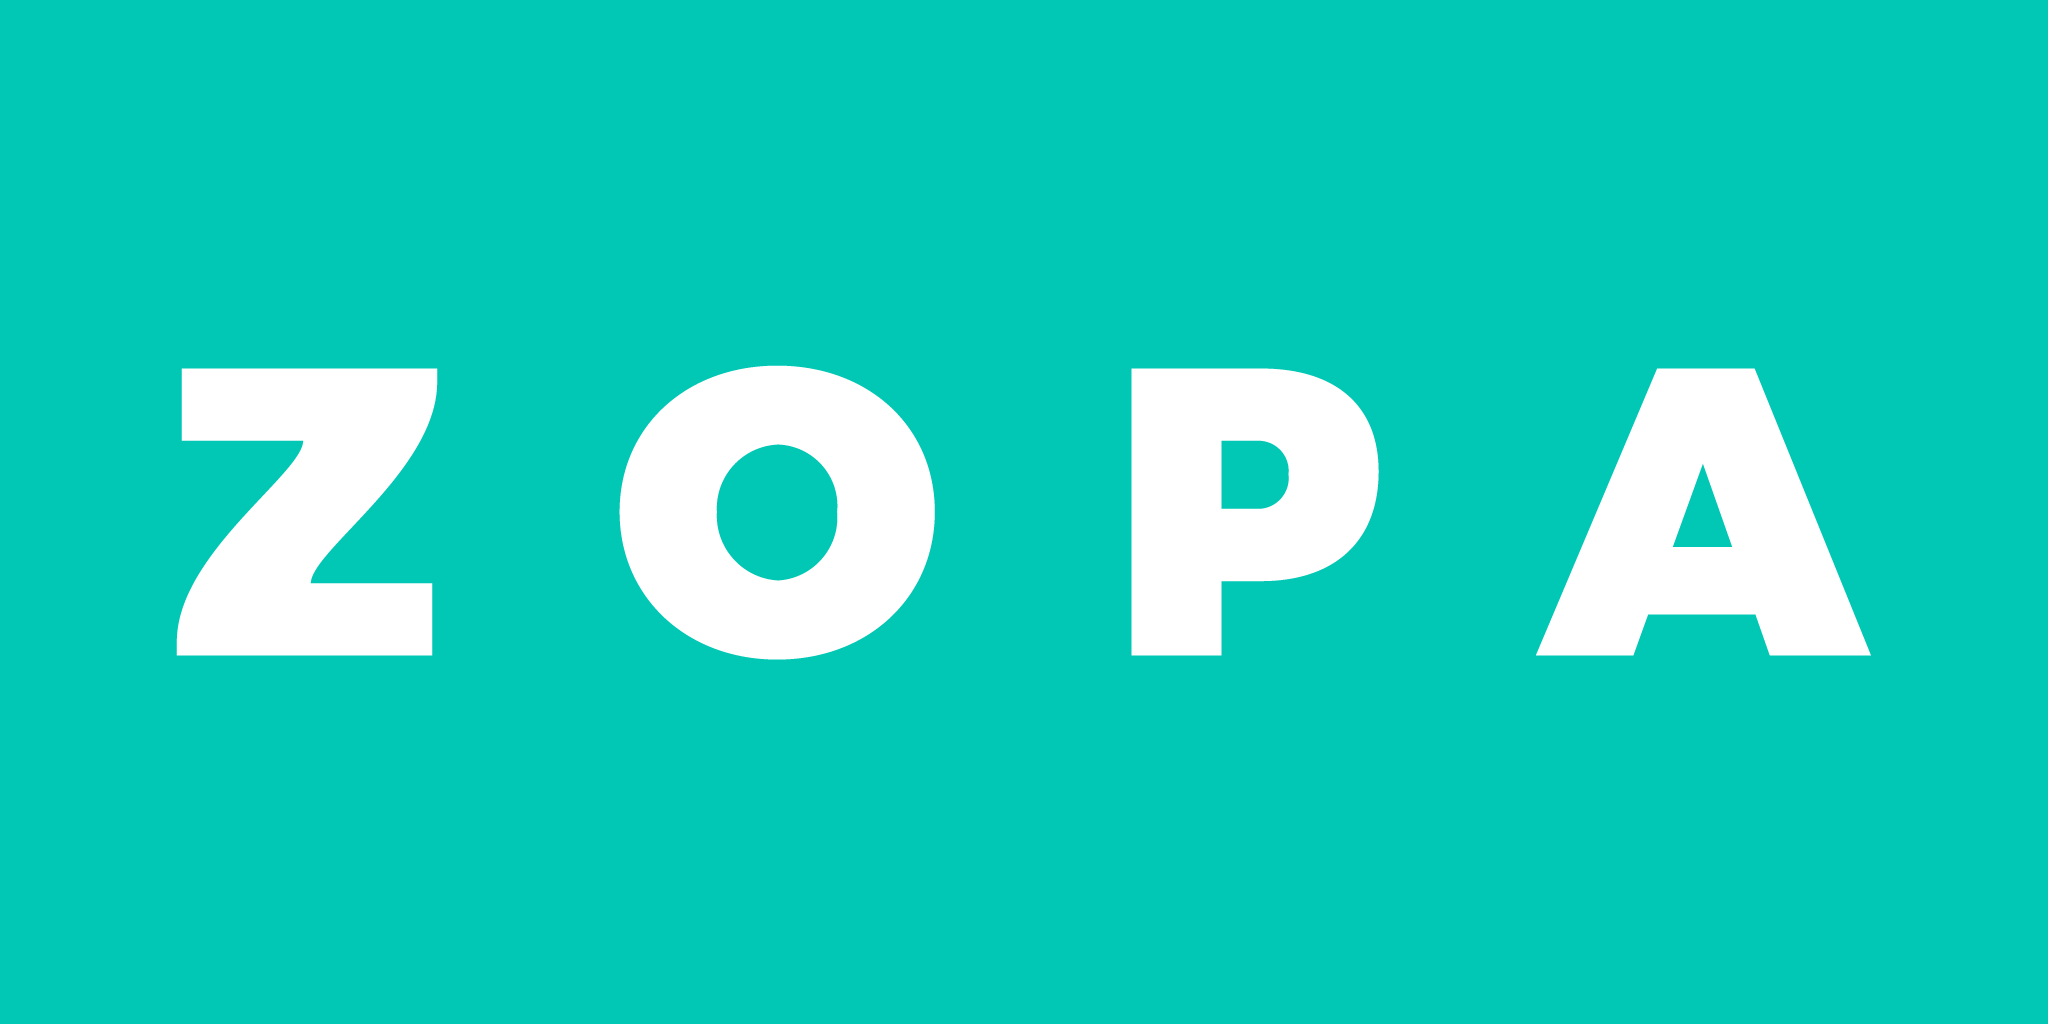 Zopa peer to peer lending firm Logo